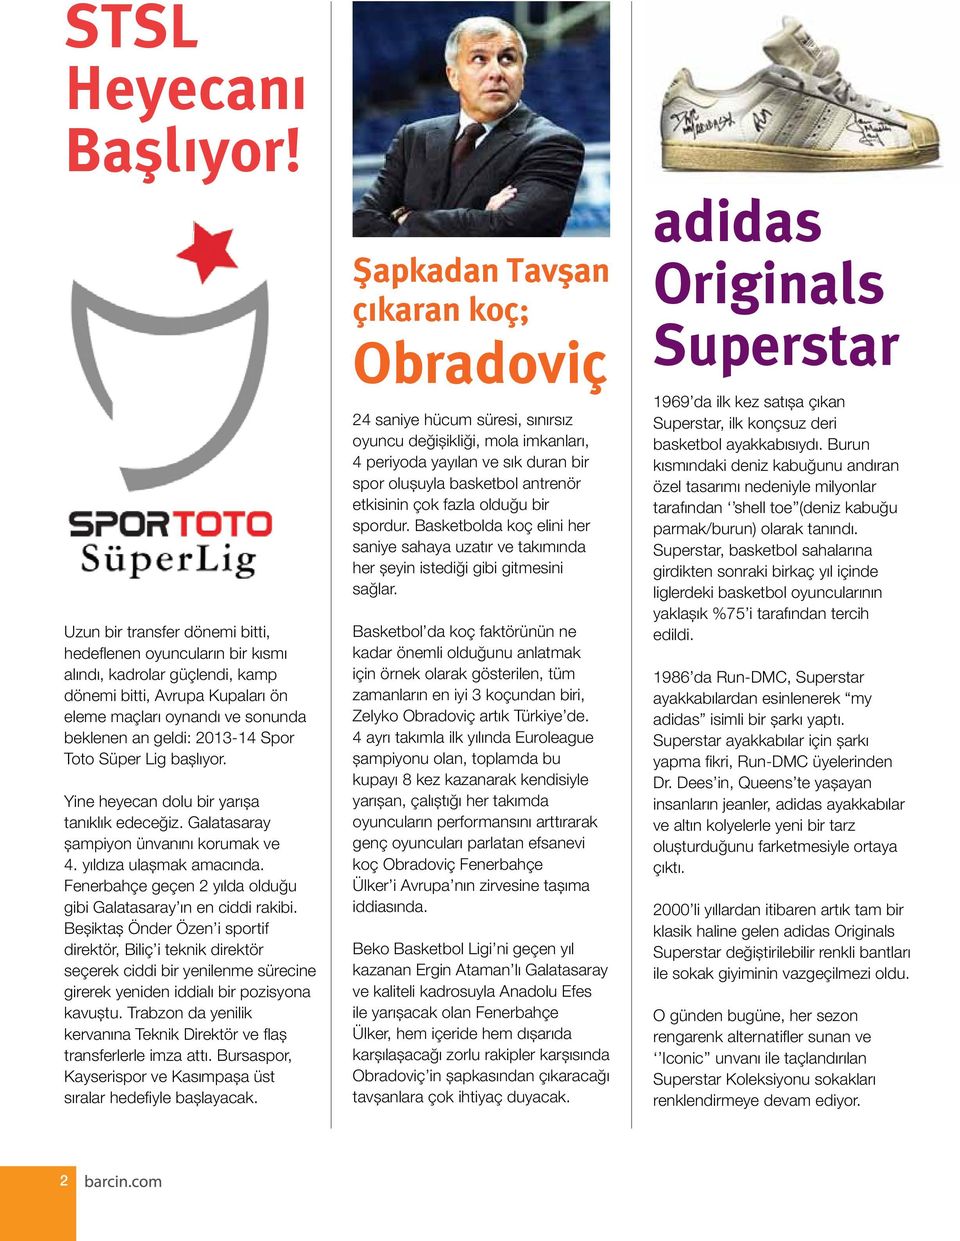 Süper Lig başlıyor. Yine heyecan dolu bir yarışa tanıklık edeceğiz. Galatasaray şampiyon ünvanını korumak ve 4. yıldıza ulaşmak amacında.